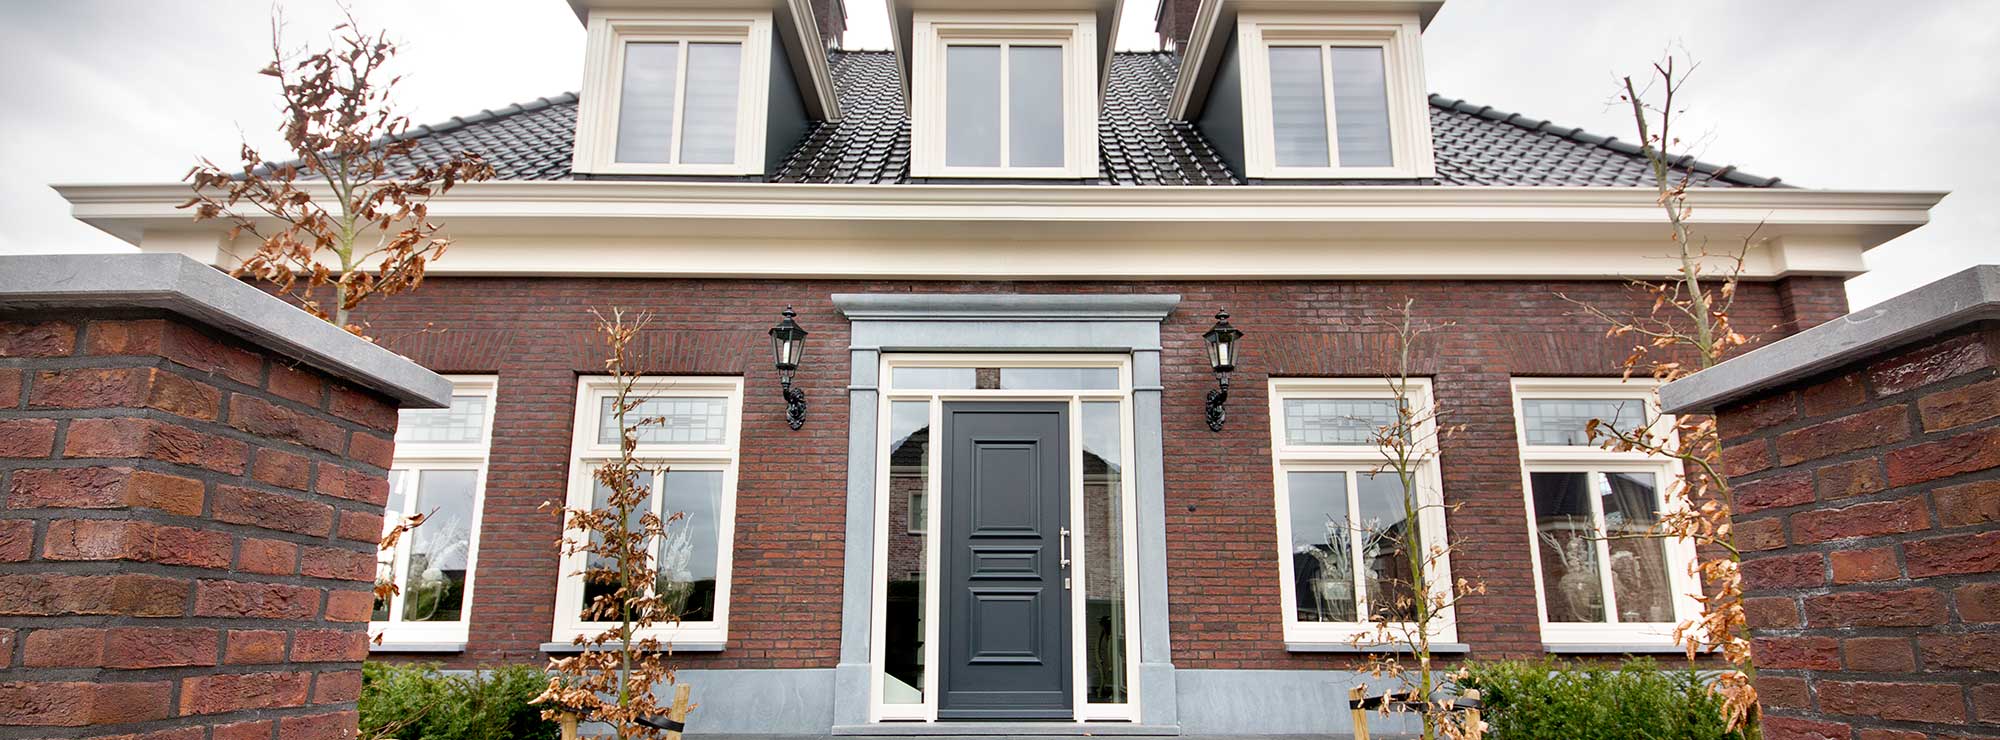 Stijlvolle grijze kunststof voordeur met zijlichten in typisch Hollandse stijl.